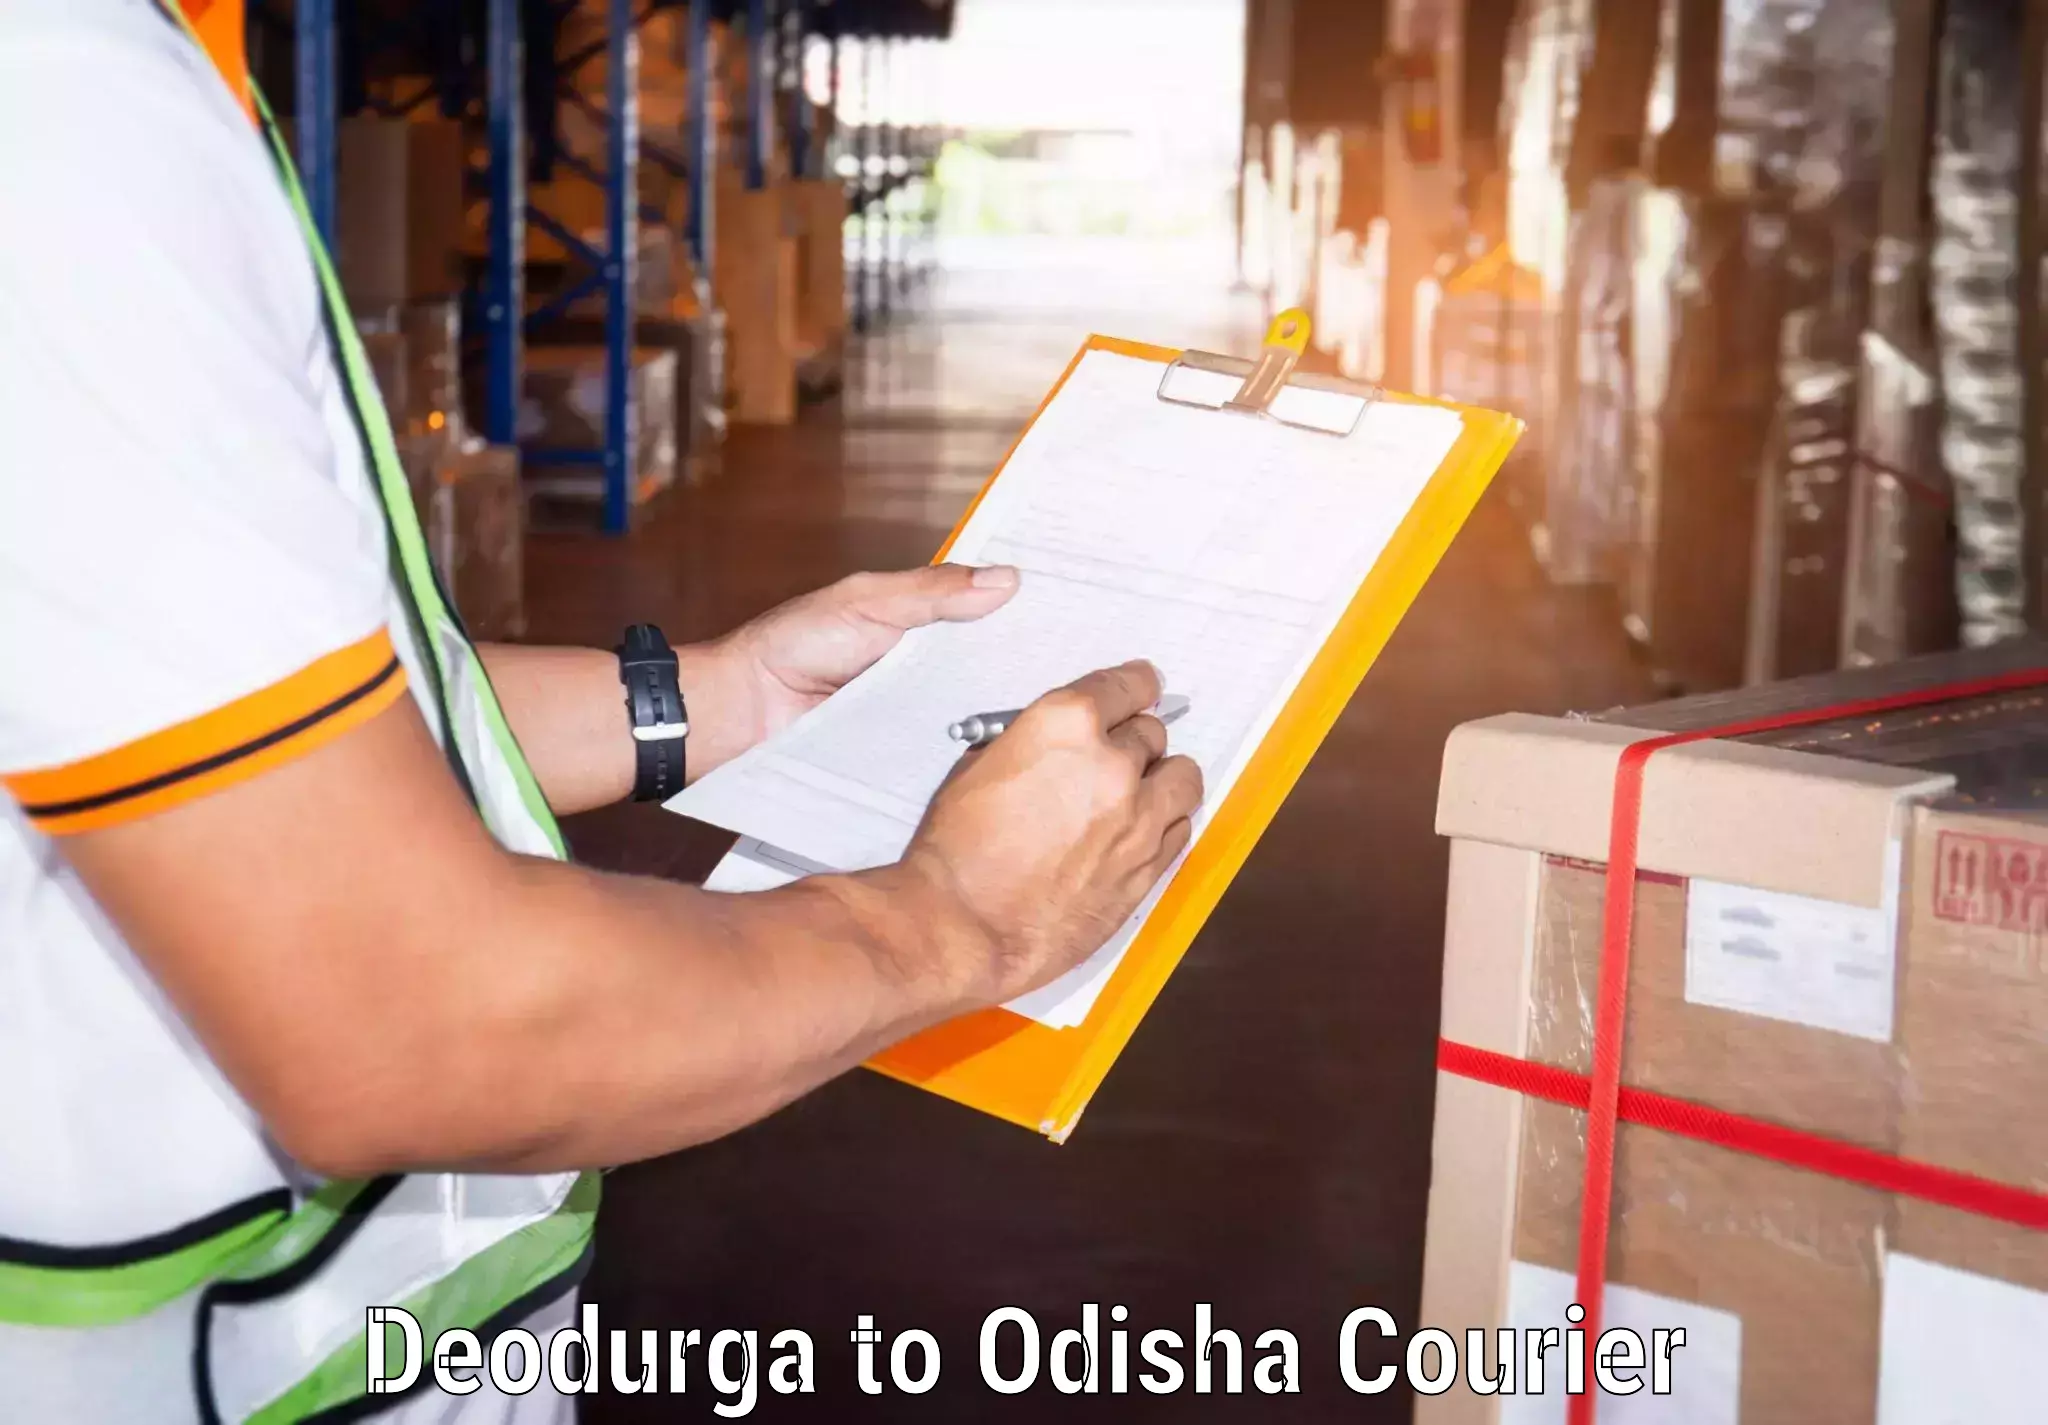 24/7 courier service Deodurga to Jaipatna